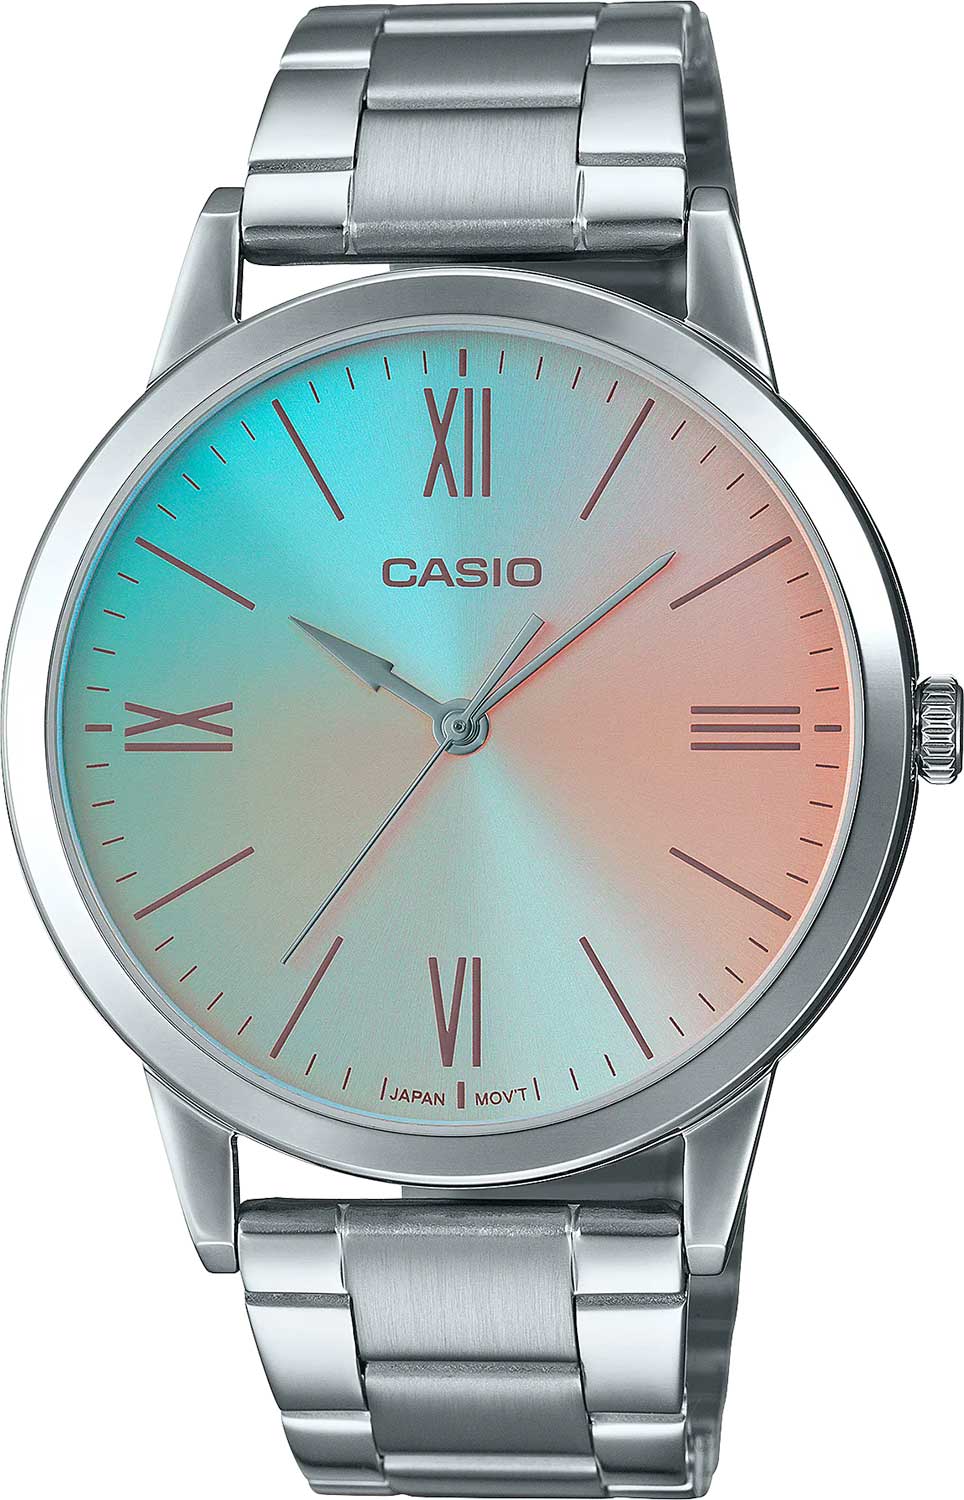 Наручные часы Casio Collection MTP-E600D-2B — купить в интернет-магазинеAllTime.ru по лучшей цене, фото, характеристики, инструкция, описание